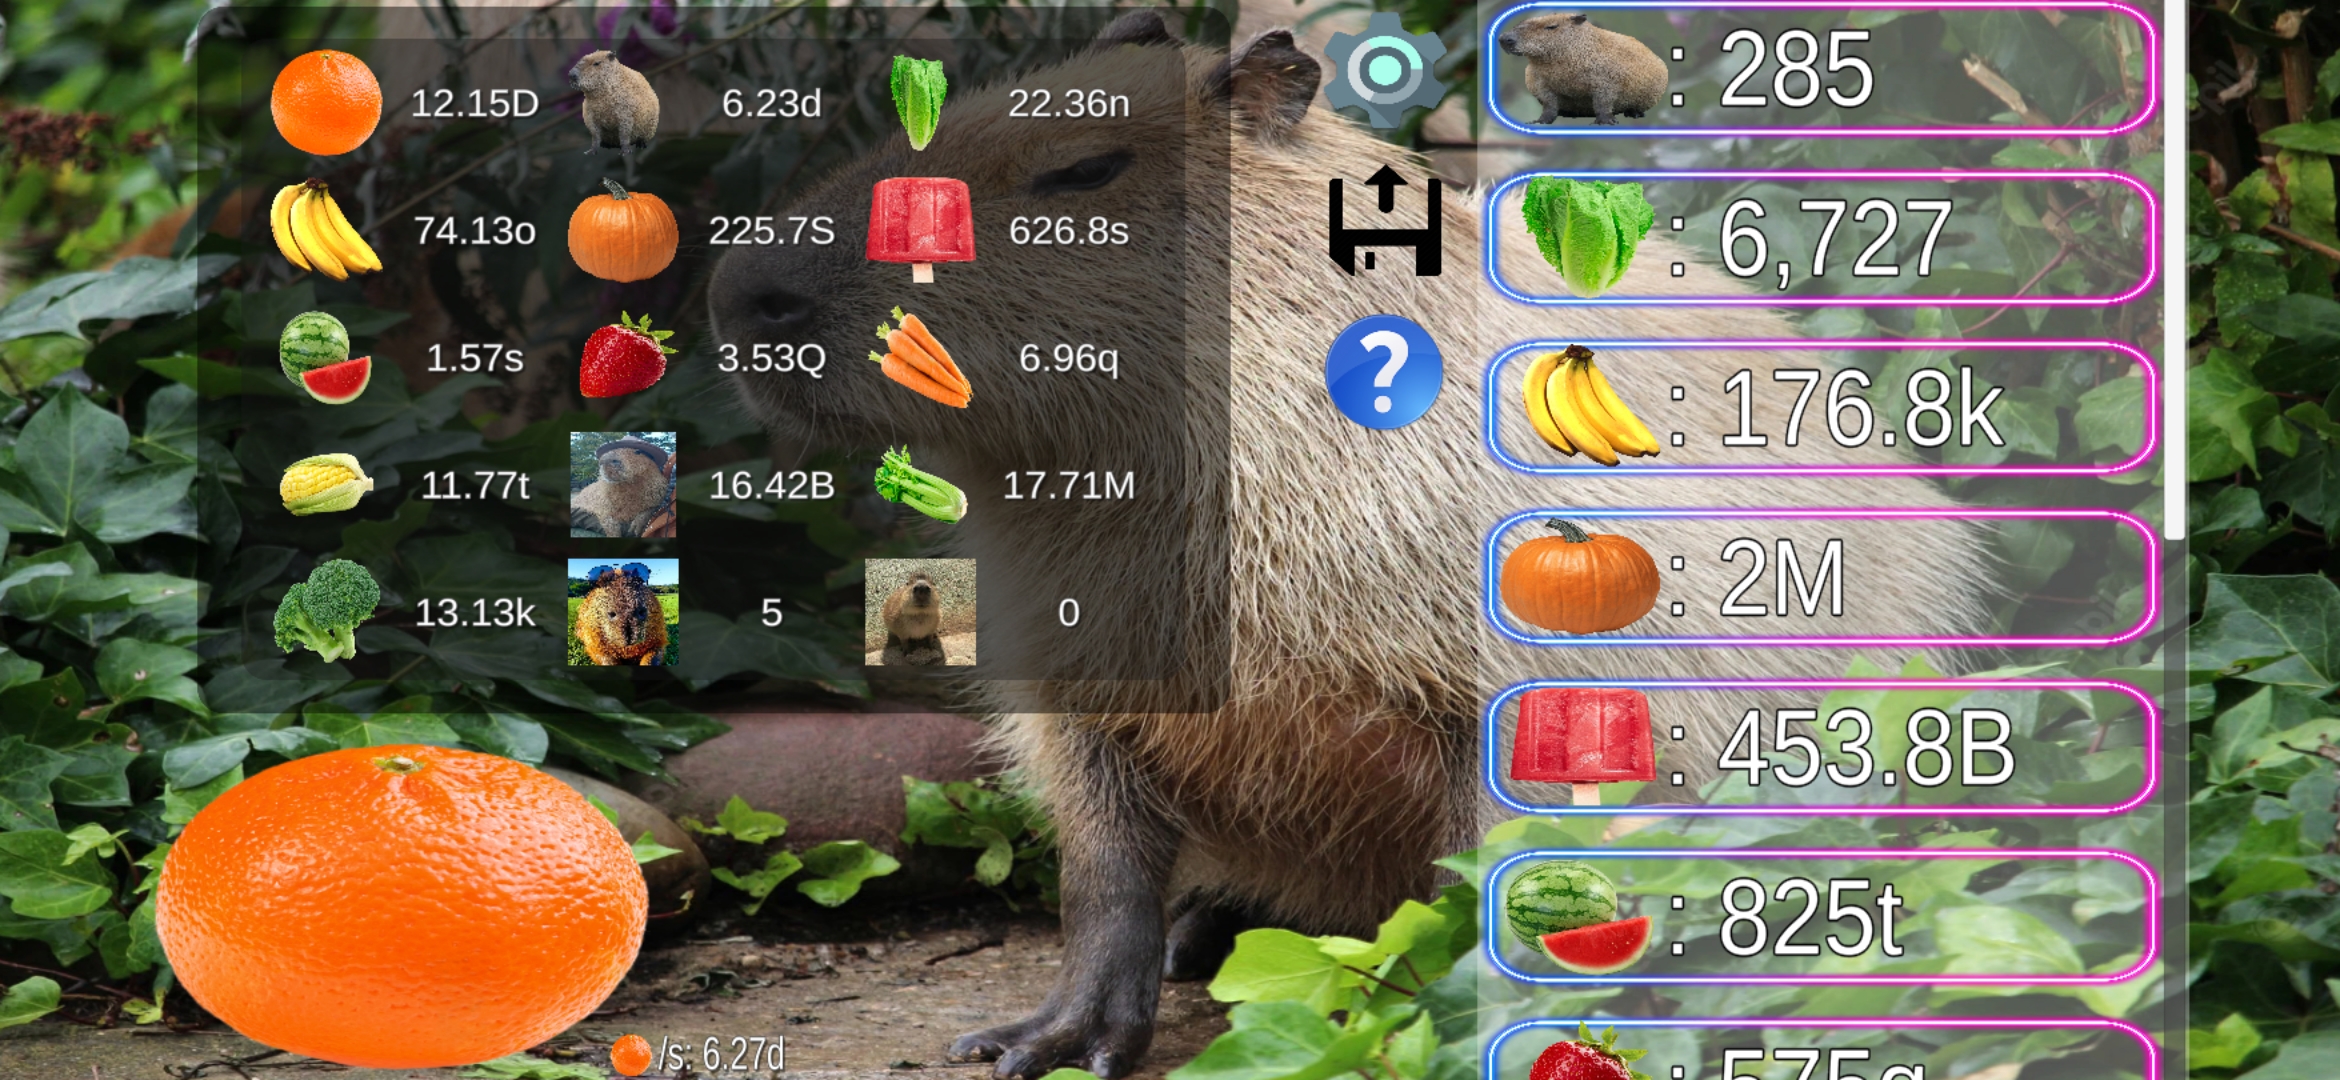 Baixar Capybara Clicker Pro para PC - LDPlayer